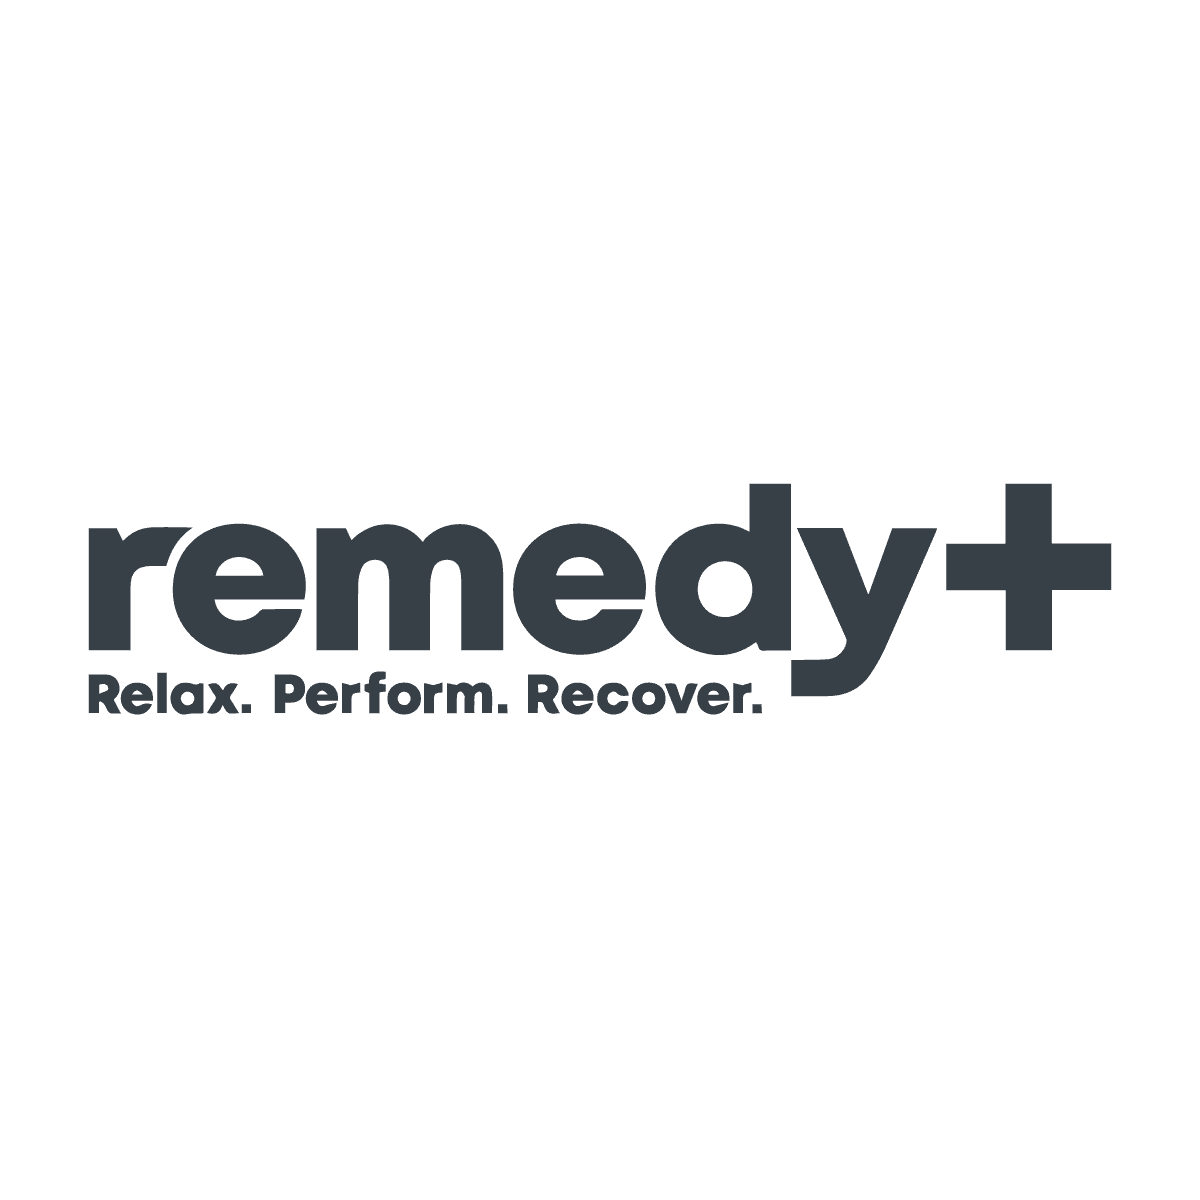 Remedy Plus logo